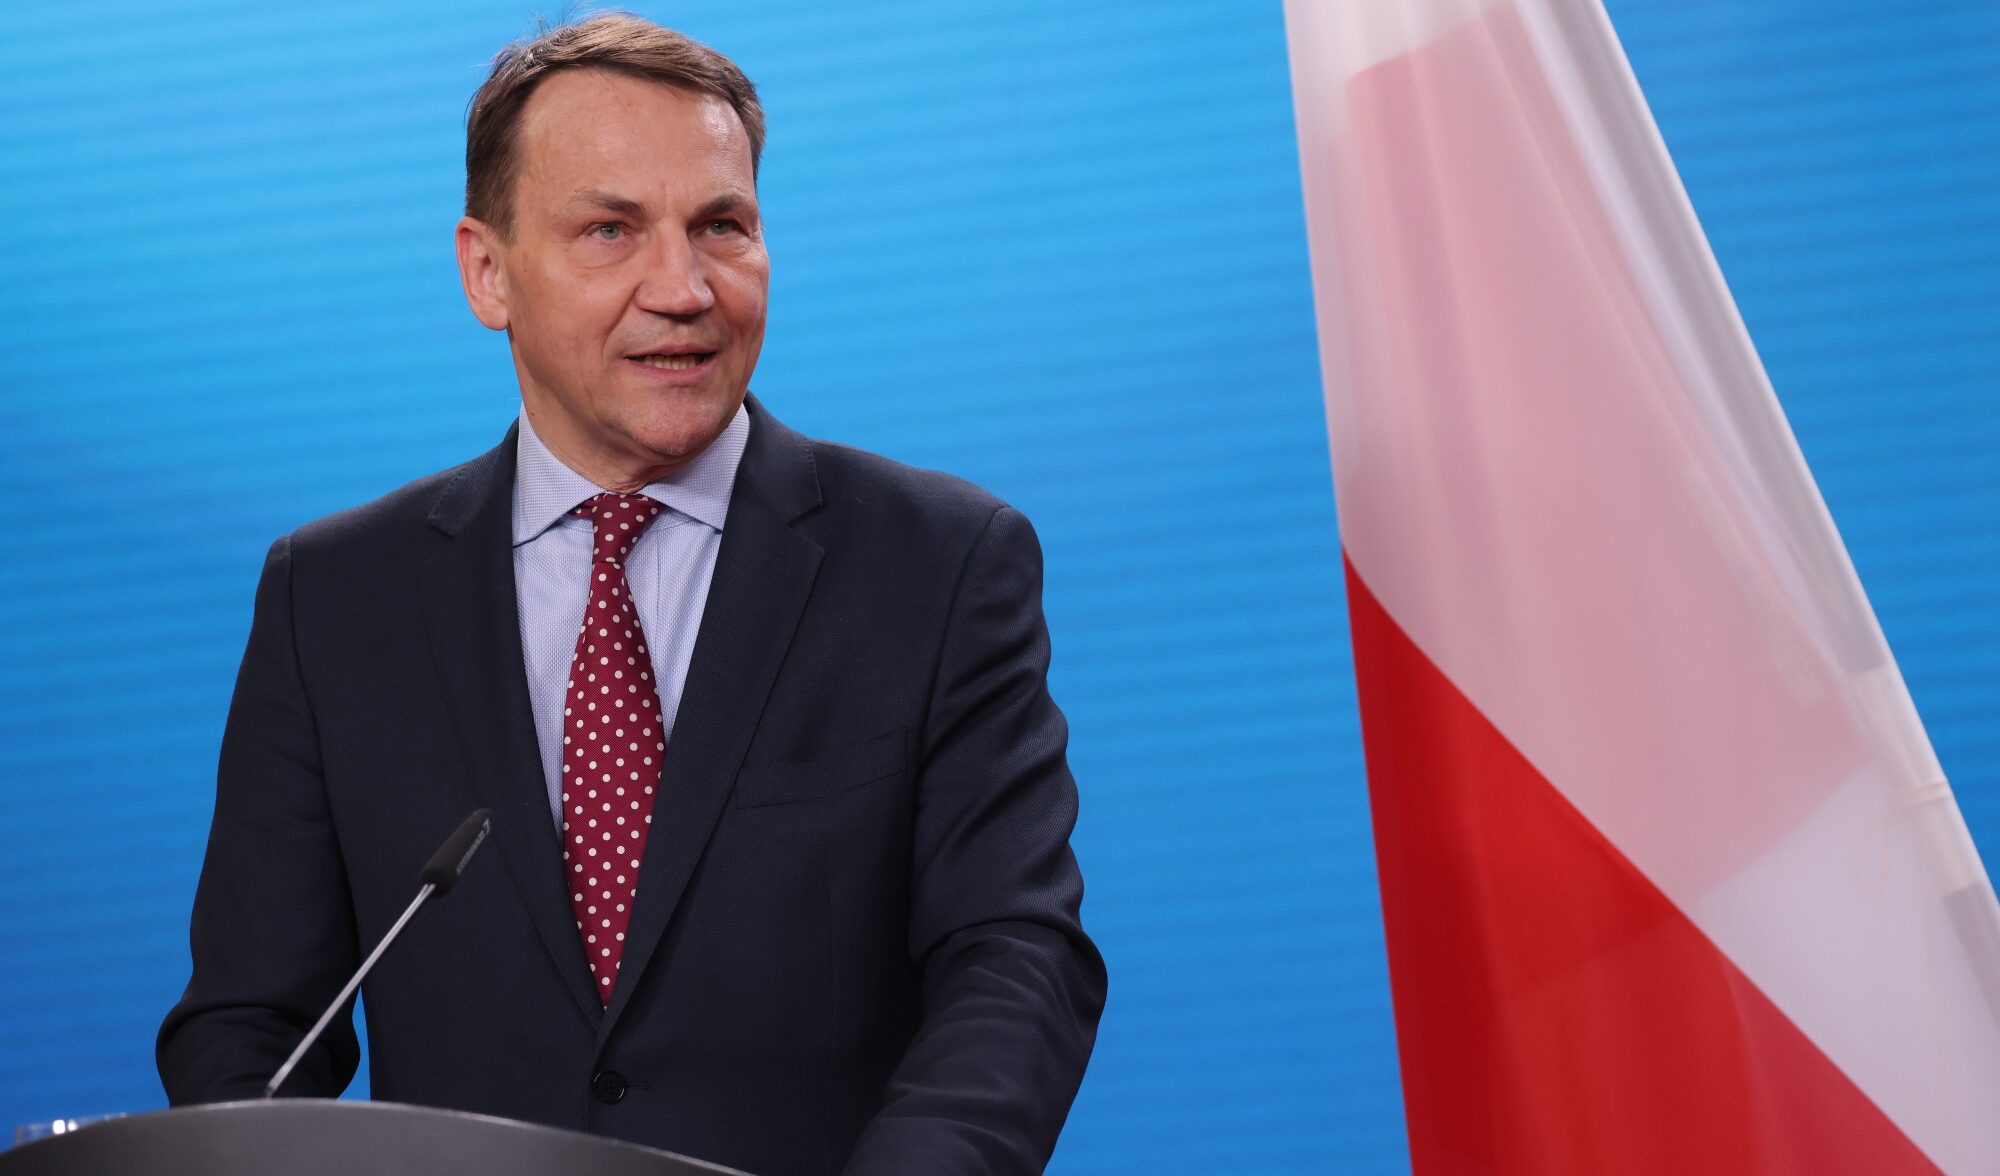 La Polonia ordina restrizioni alla circolazione dei diplomatici russi sul suo territorio